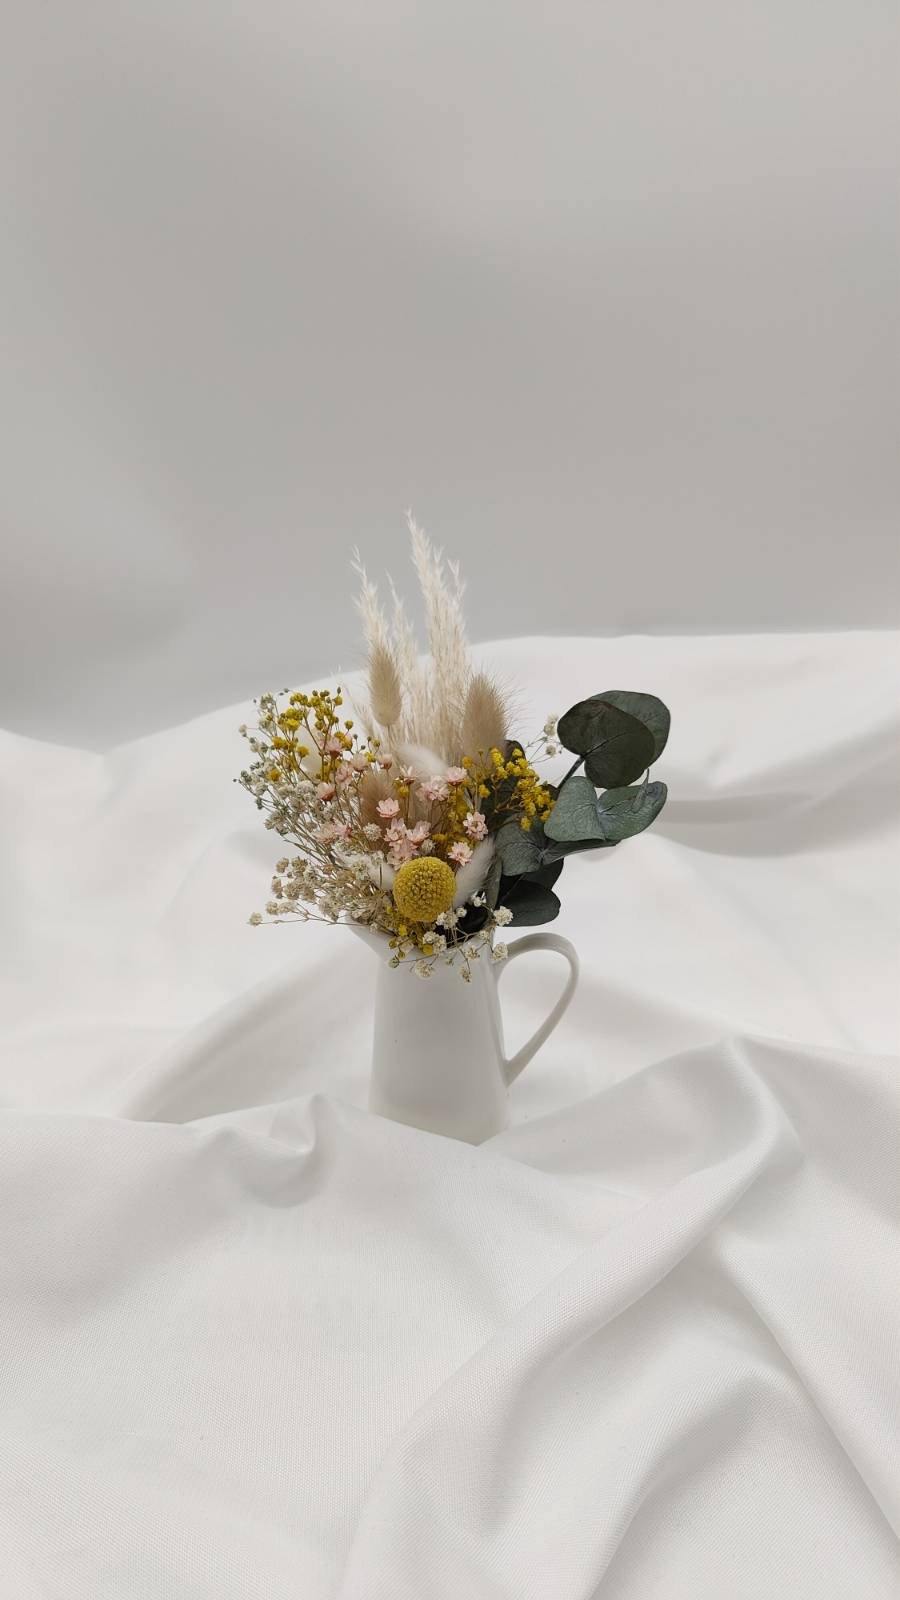 Mini-Trockenblumen Sträußchen mit Vase in weiß - www.Flower-Passion.com